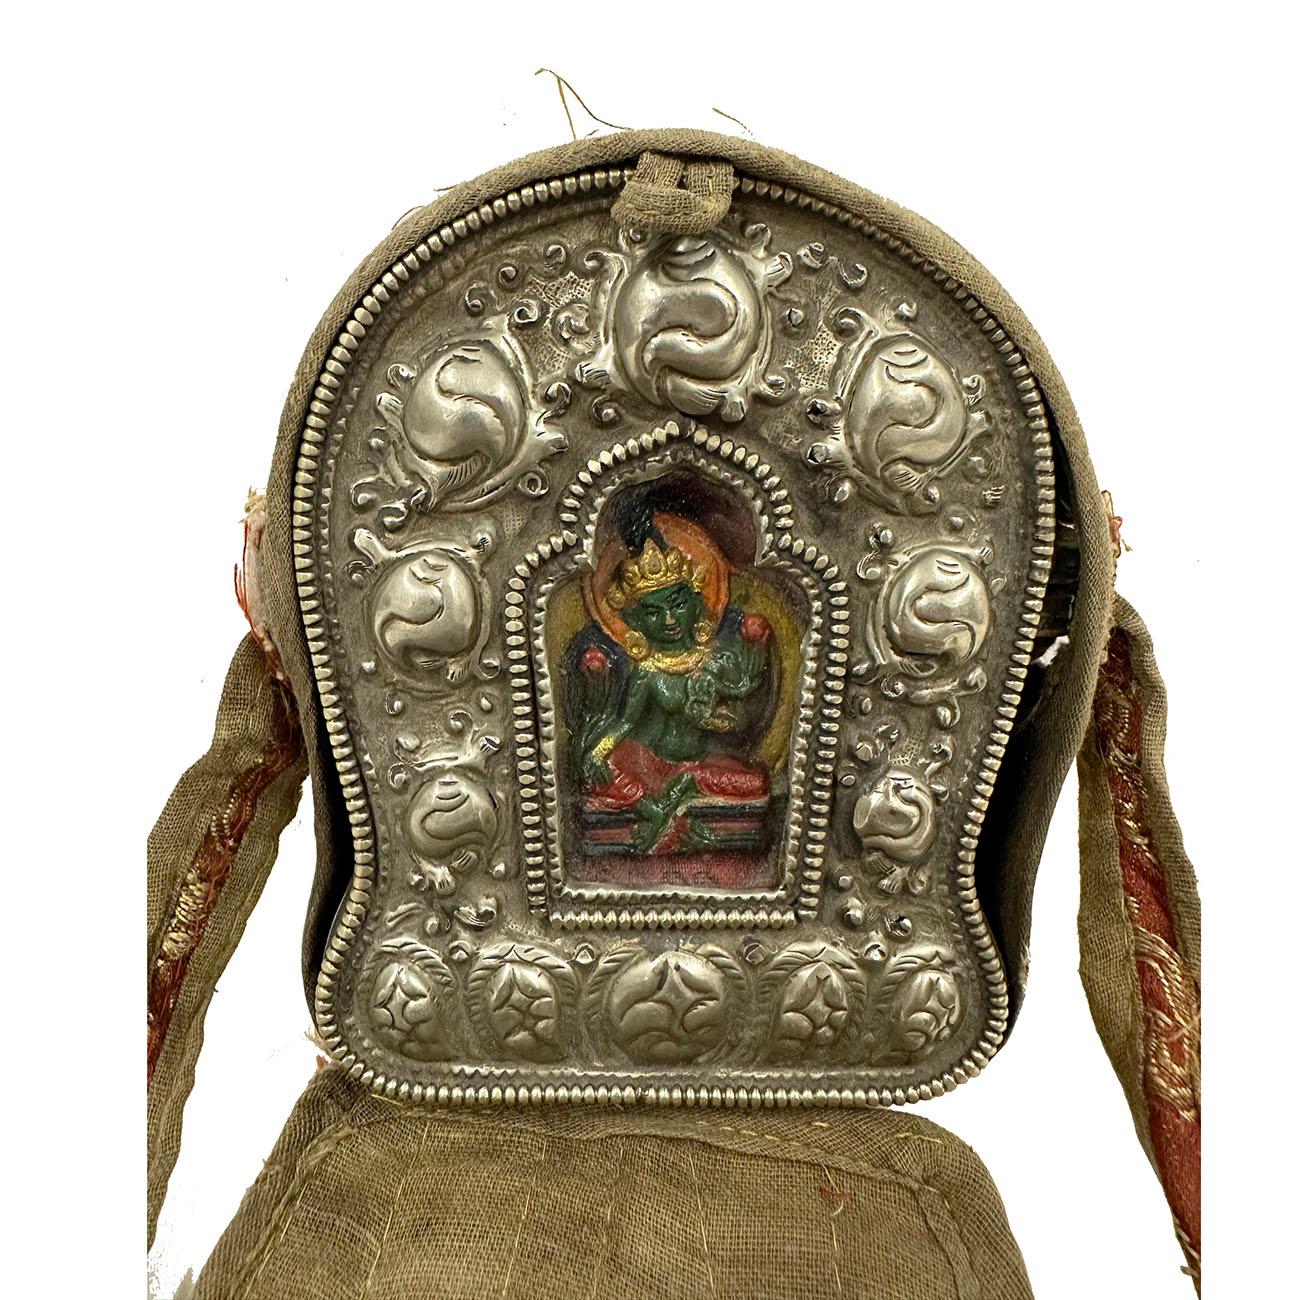 Ghau ist ein kleines Gebetskästchen, das von Buddhisten als Anhänger getragen wird und als tragbarer Schrein dient, den sie auf ihren Reisen zum Gebet nutzen können. Diese Ghau Gebetsbox (Reise-Buddha-Schrein) aus tibetischem Silber mit einem